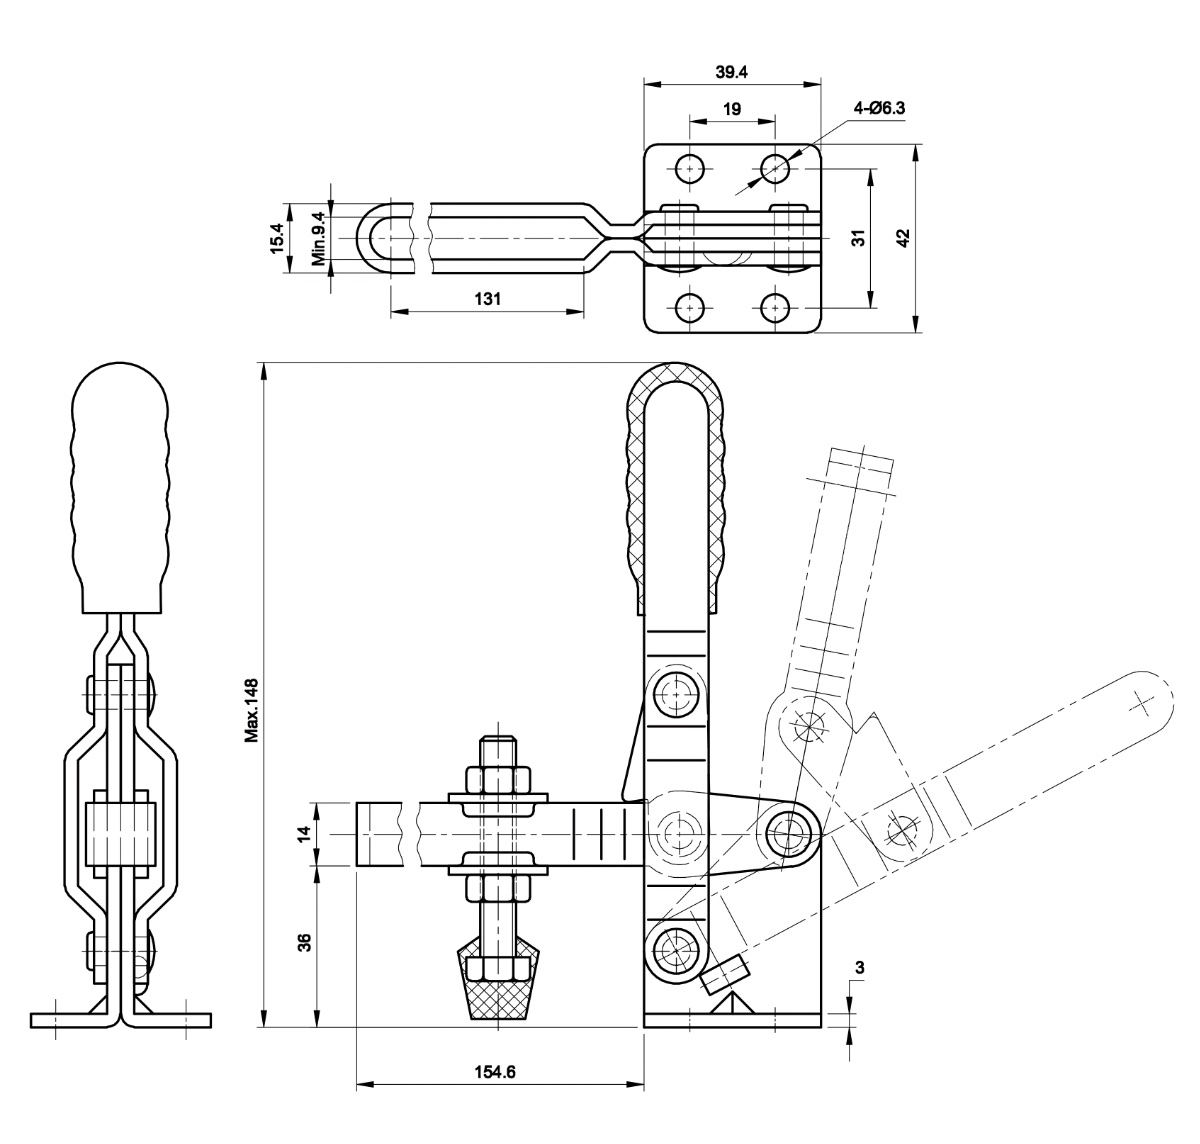 DST-101-D-15 Technische Zeichnung Senkrechtspanner-Vertikalspanner waagrechter Fuß, verstellbare Andrückspindel, extra langer U-Spannarm 1800N